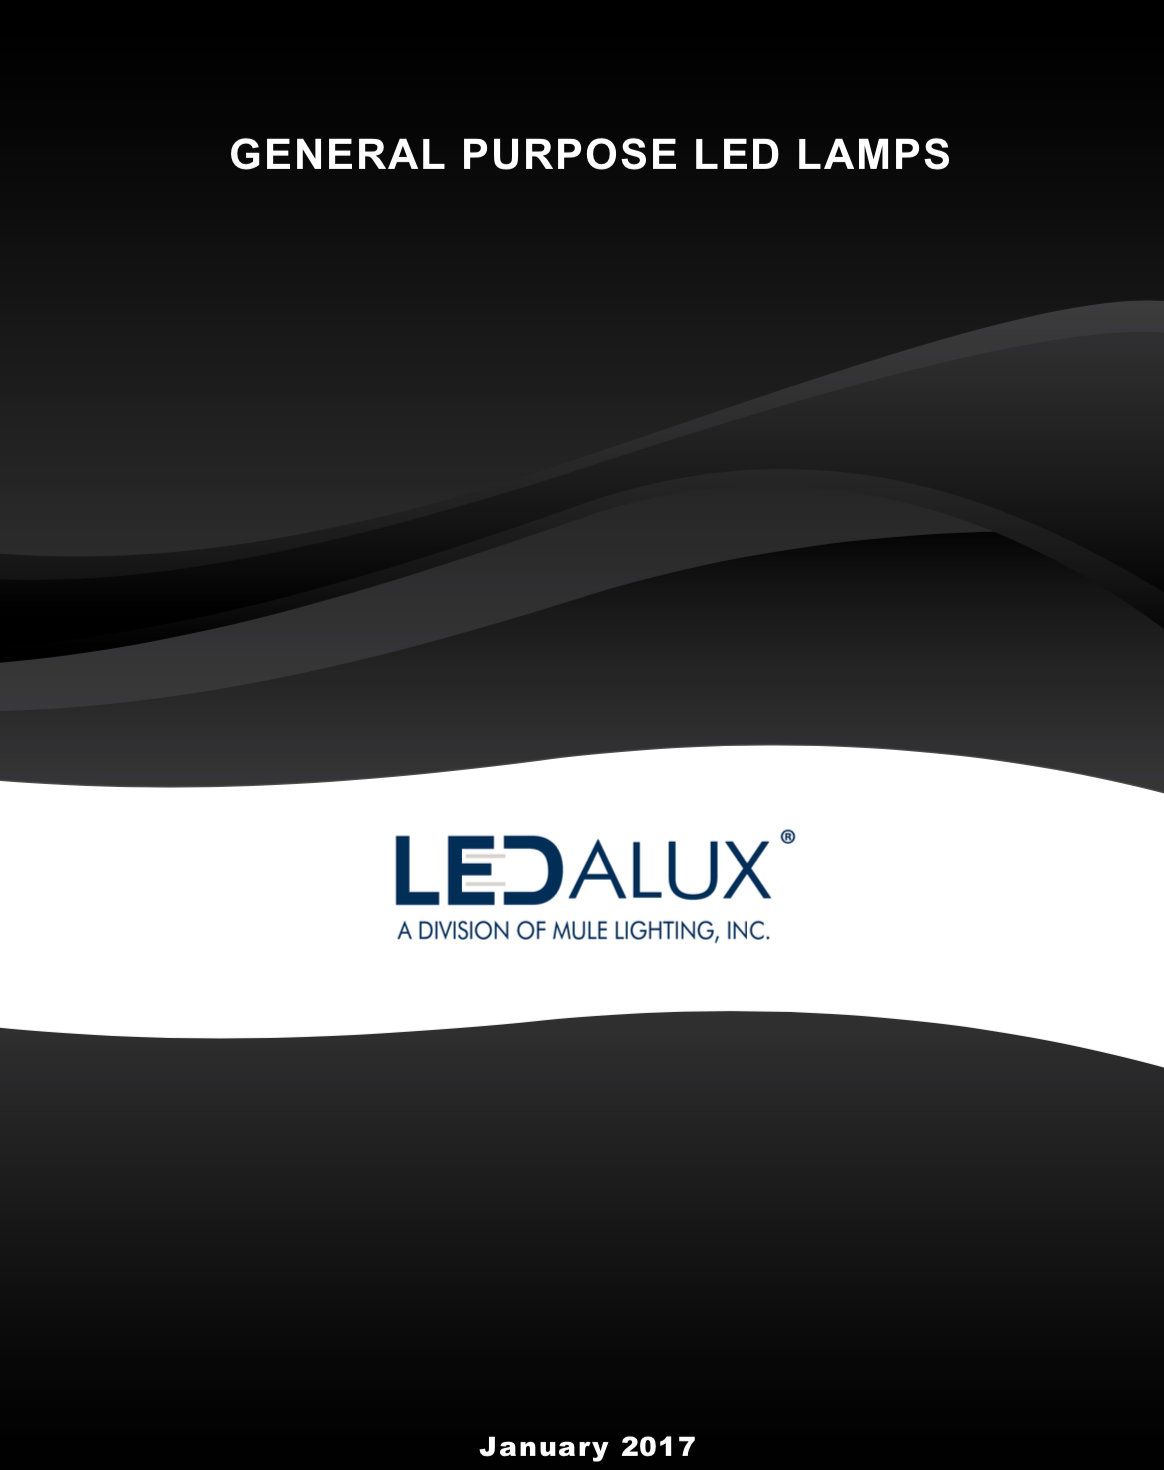 LEDalux LEDalux LED Lamp Catalog Literature